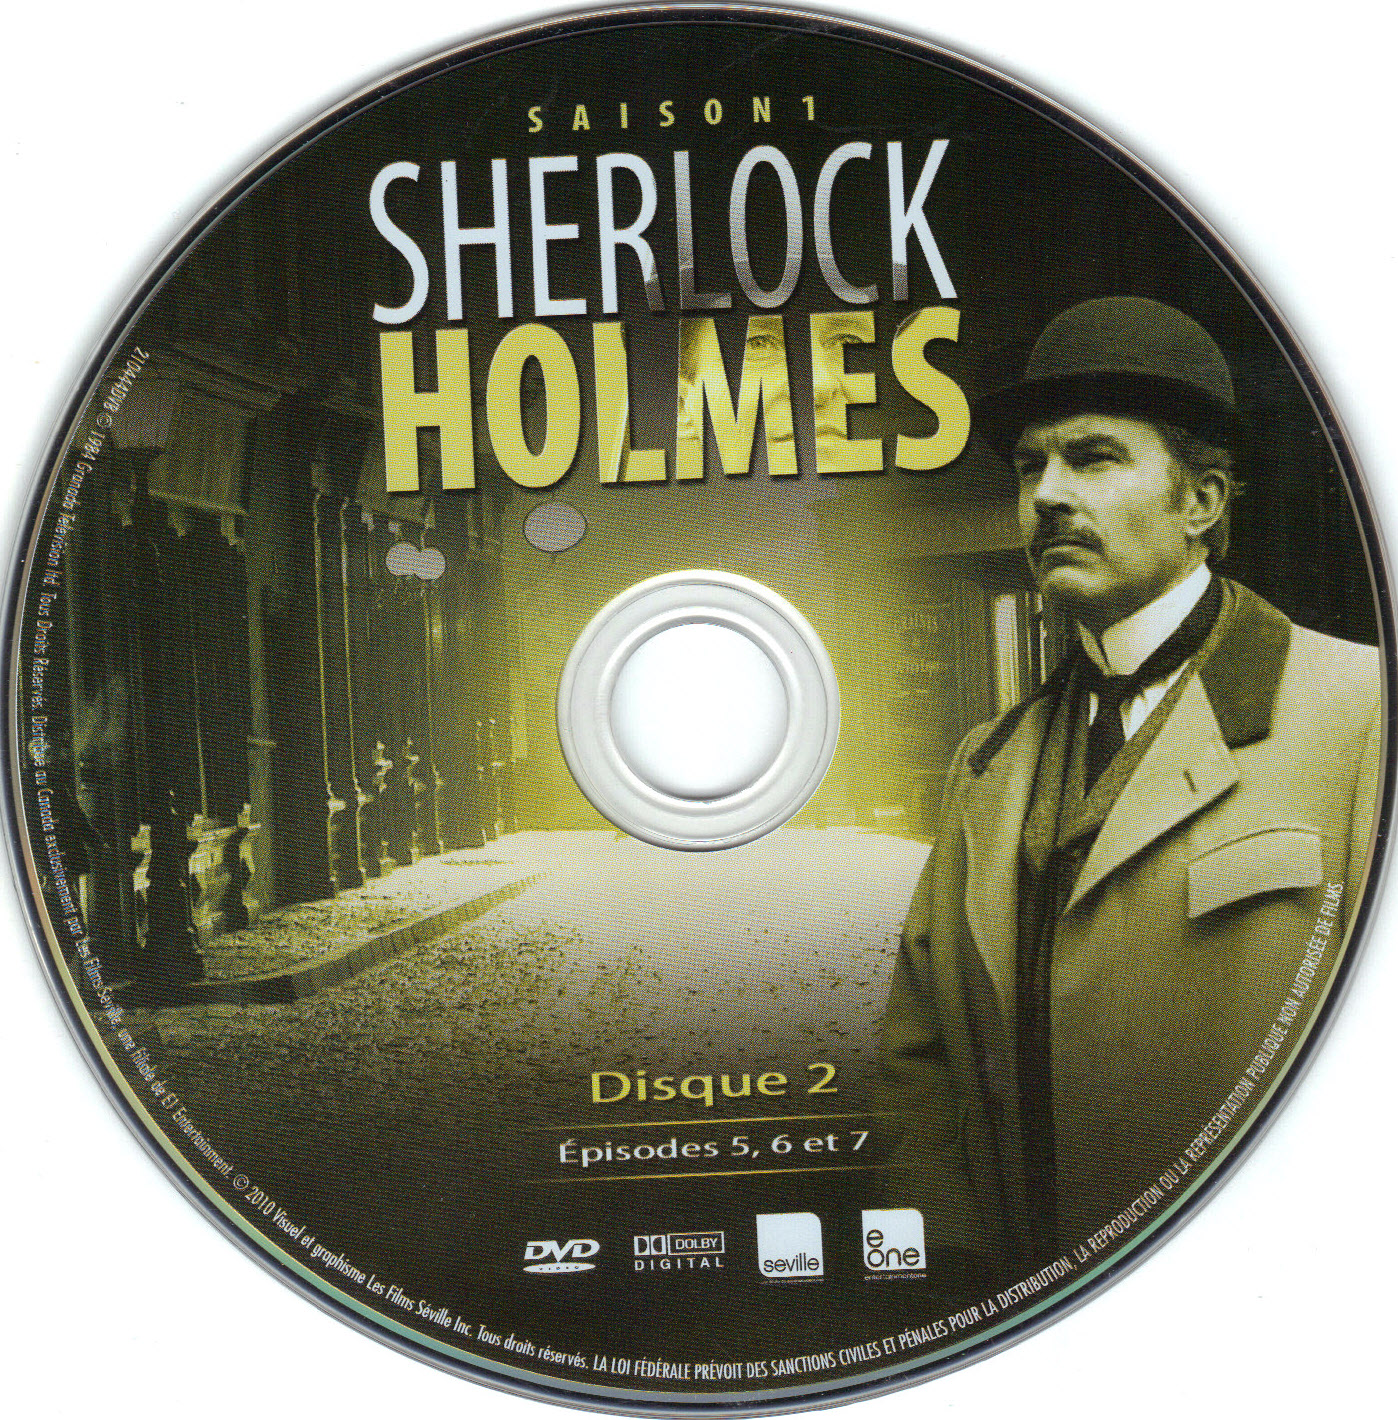 Sherlock Holmes Saison 1 DISC 2